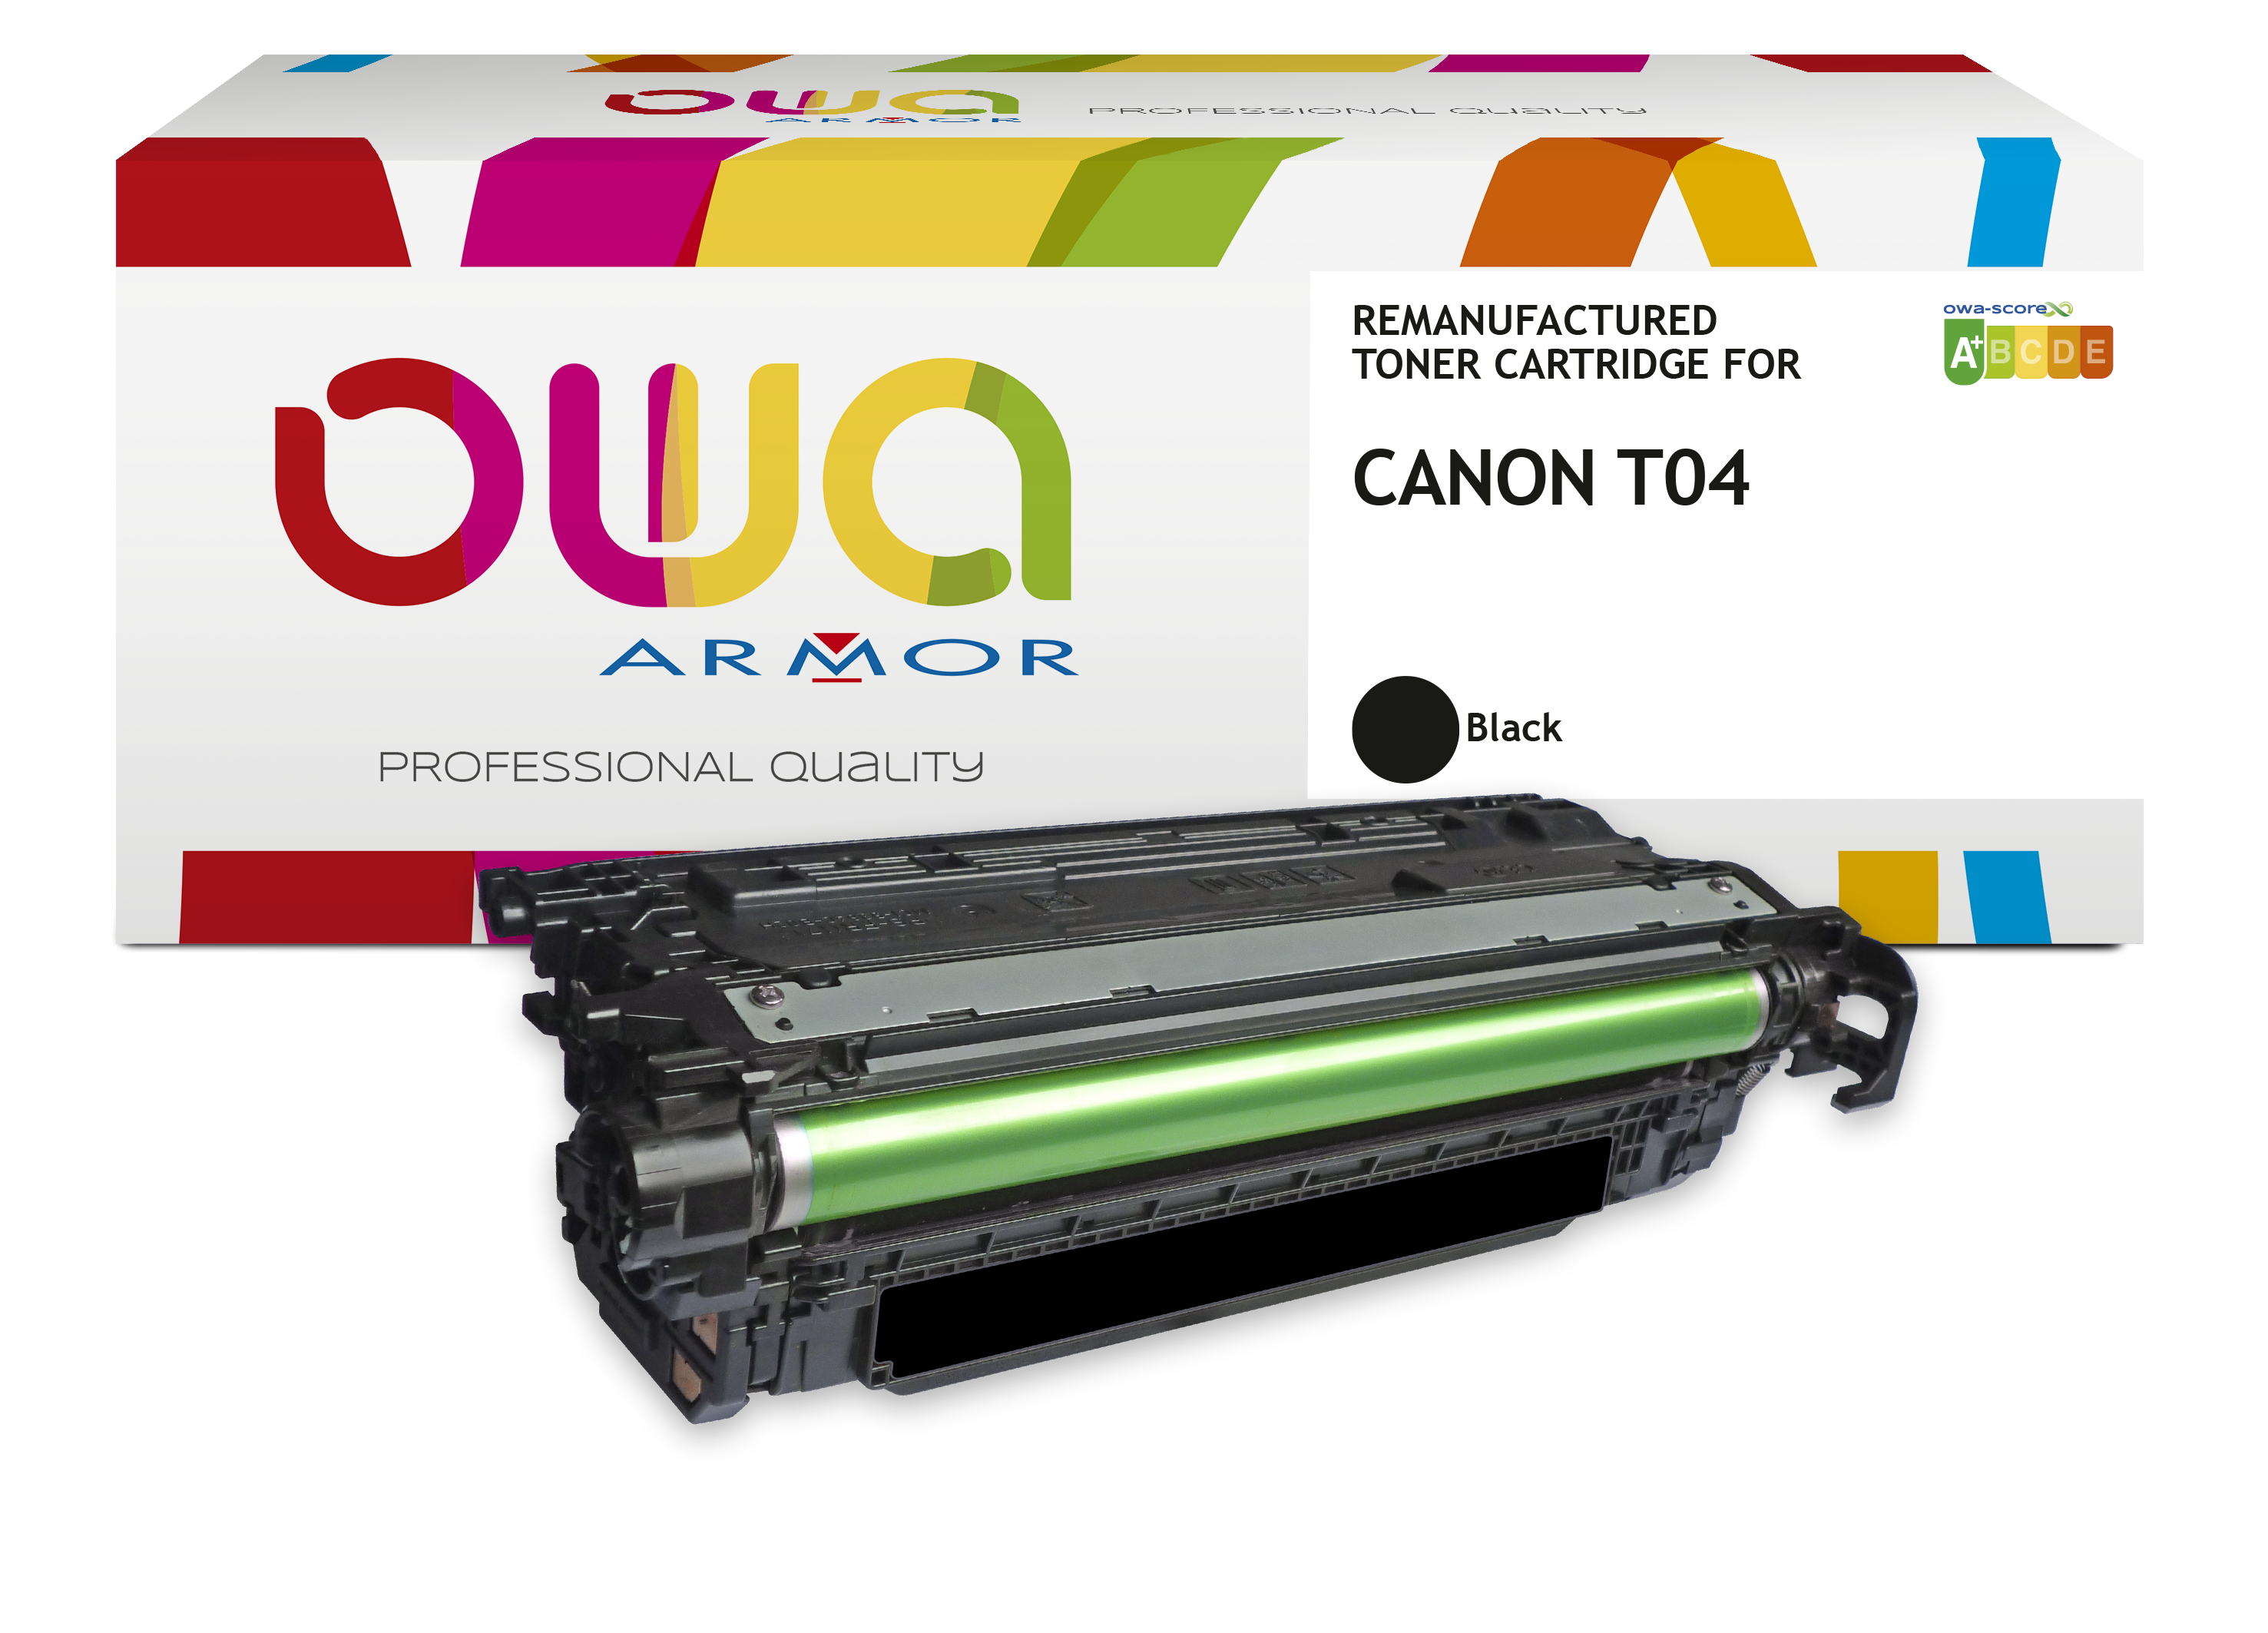 Nouveautés Toner OWA : CANON T04 et SAMSUNG CLT-659S